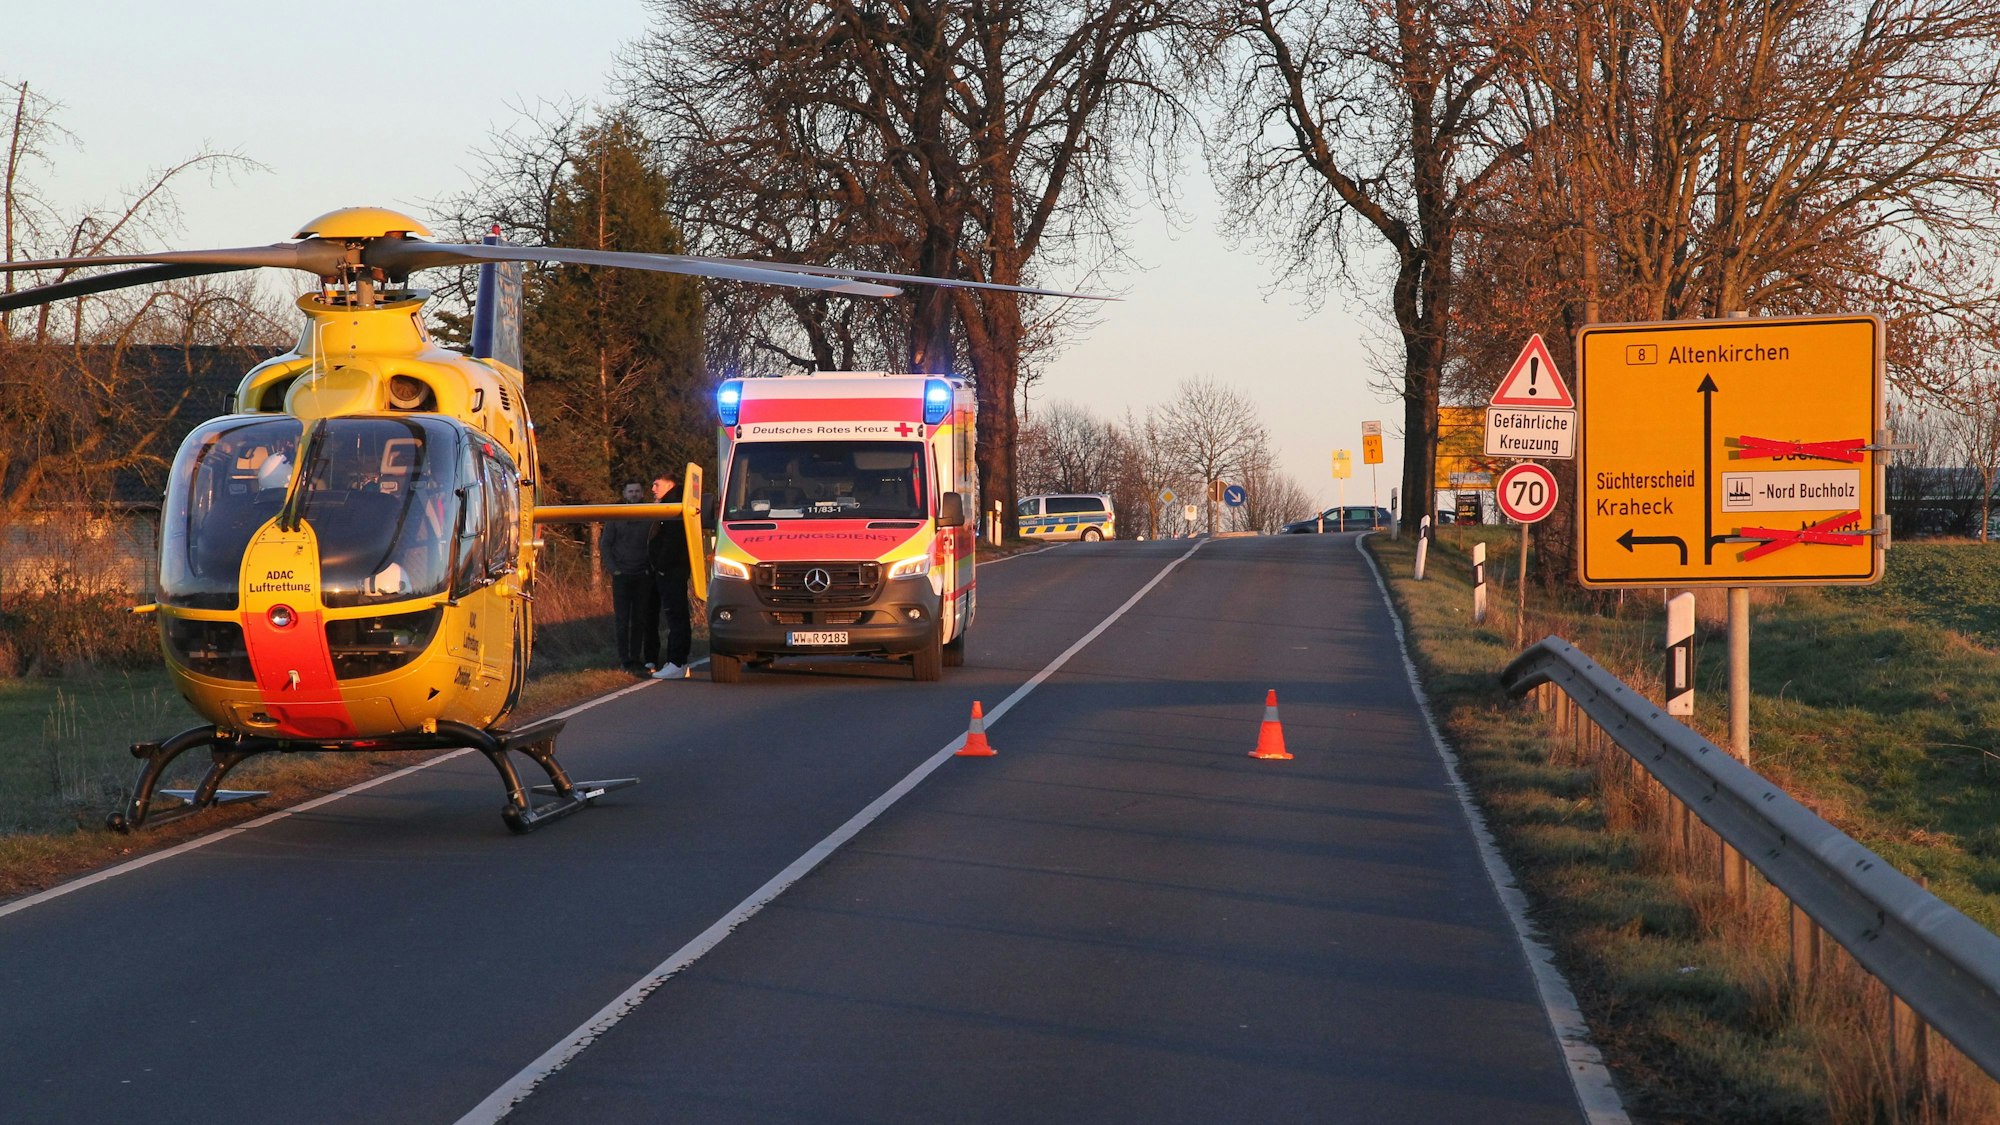 schwerer Unfall auf der B8 hinter Uckerath kurz hinter Rheinland-Pfanlz mit fünf Verletzten, eine Frau davon schwer verletzt